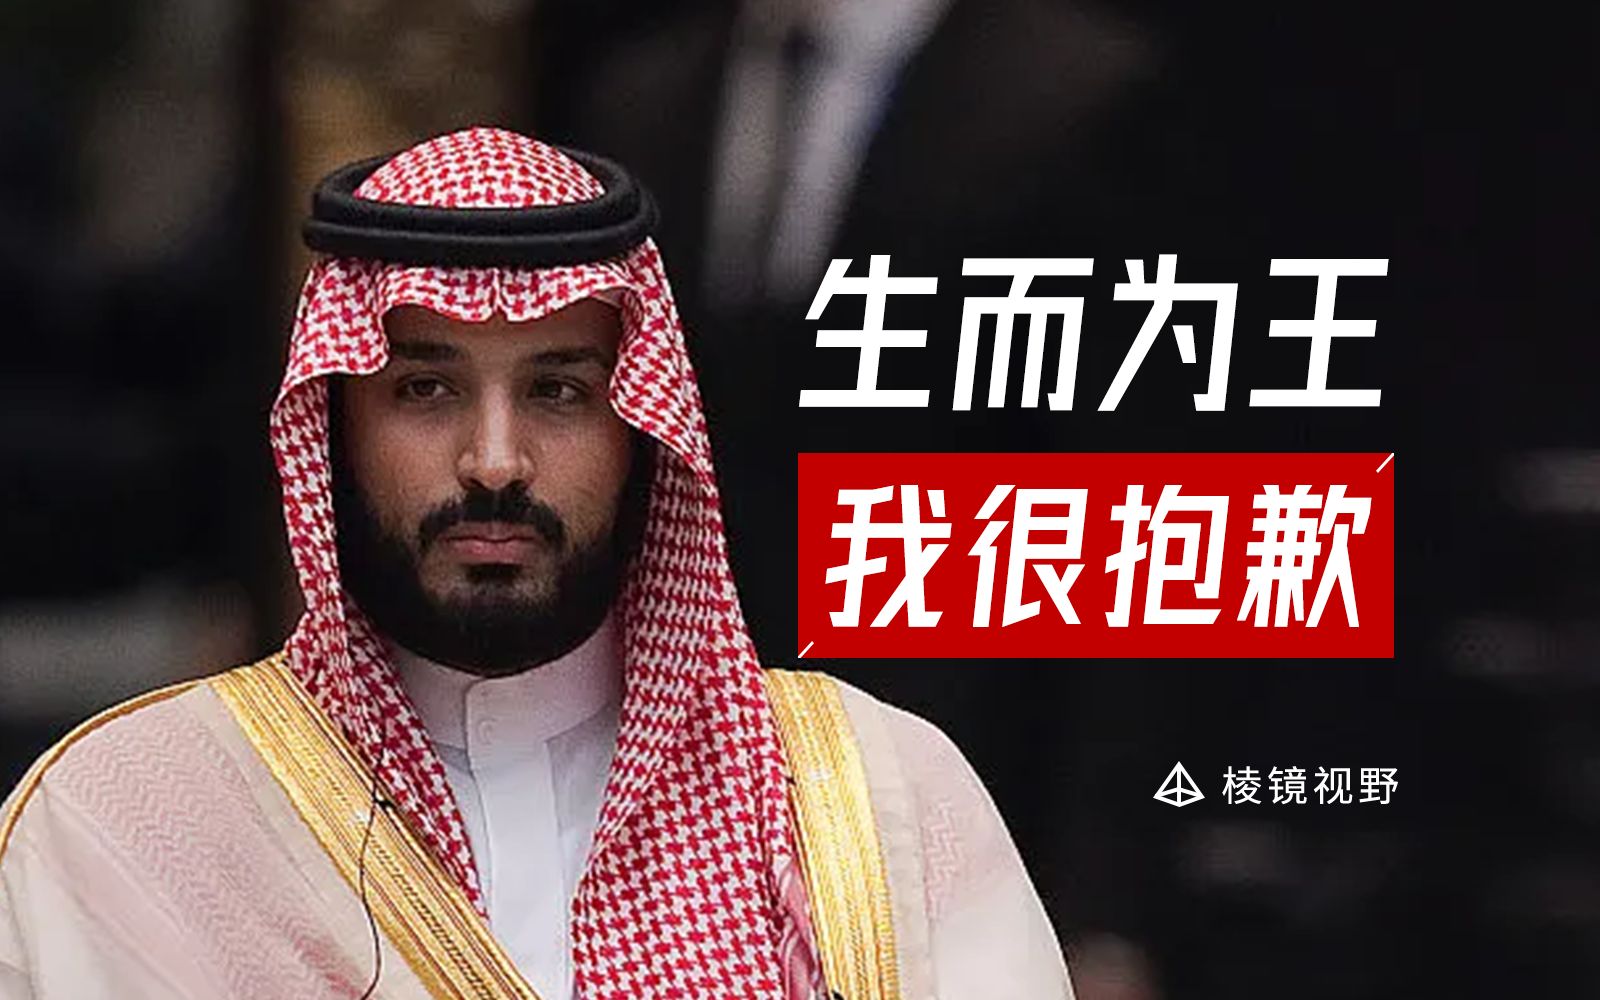 加沙危在旦夕，沙特为何袖手旁观？沙特王室的帝王心术